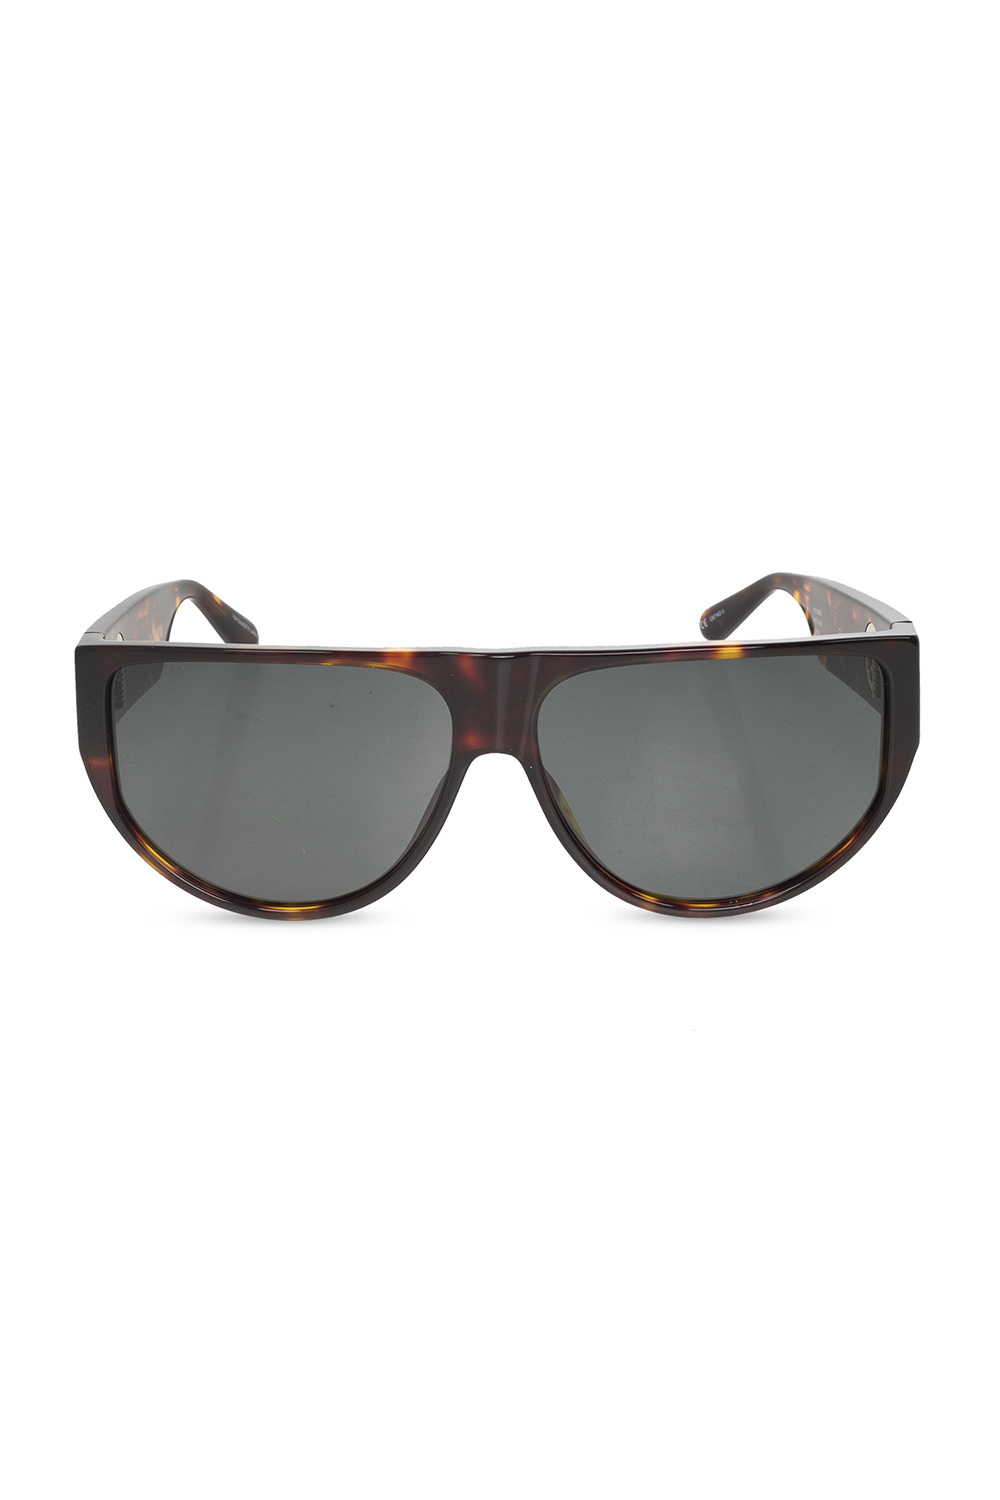 Linda Farrow Elodie Flat Top Sunglasses in Black Womens Sunglasses Linda Farrow Sunglasses 